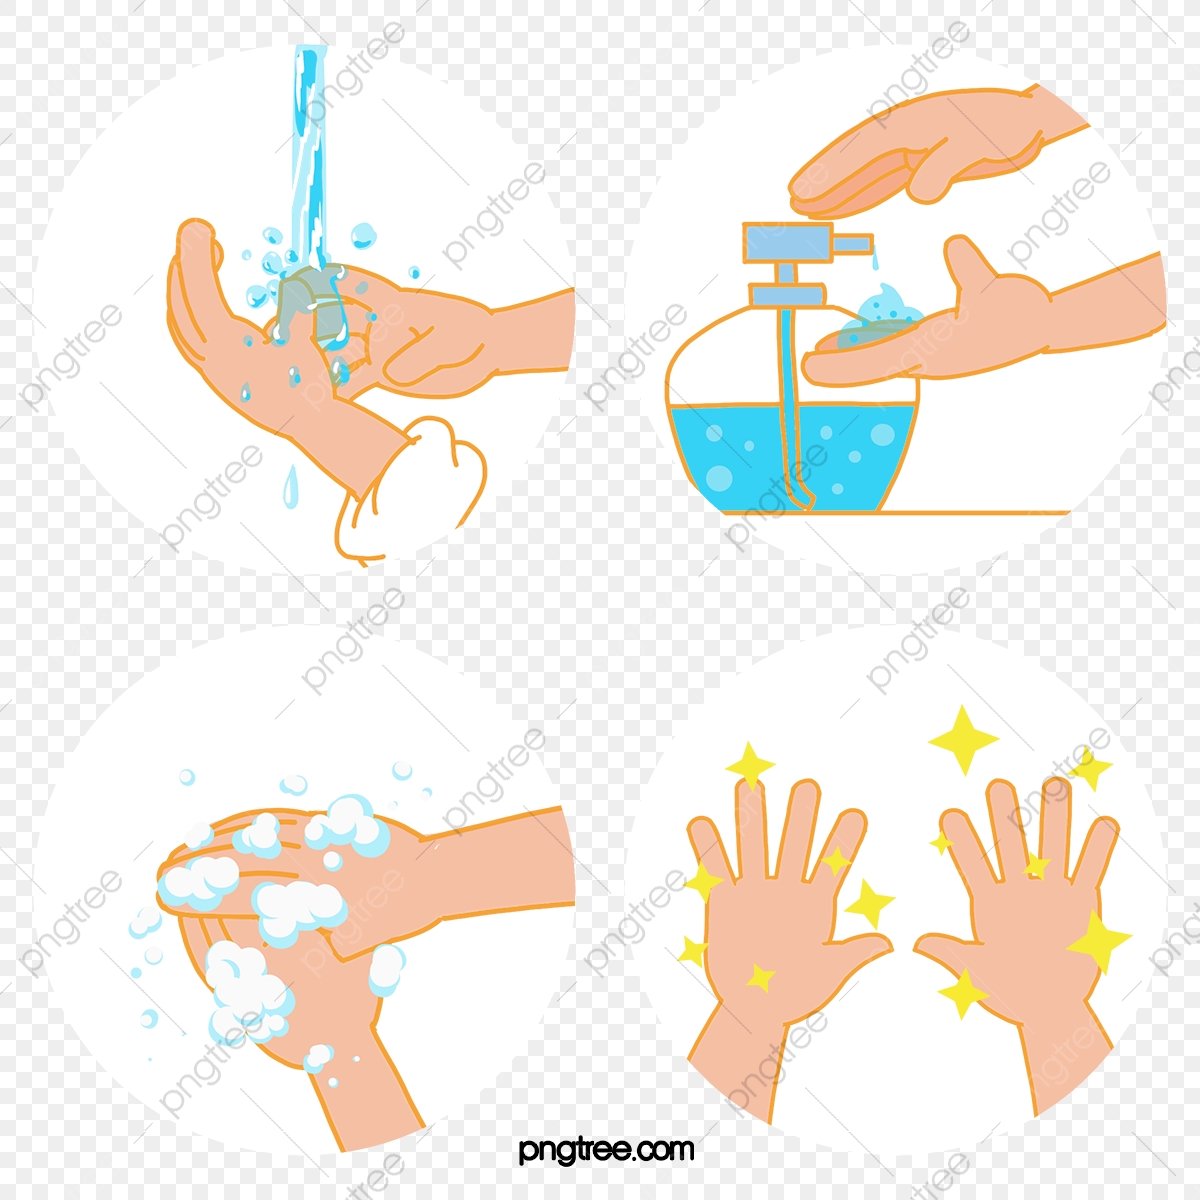 Soap, Hand Washing, Hygiene, 